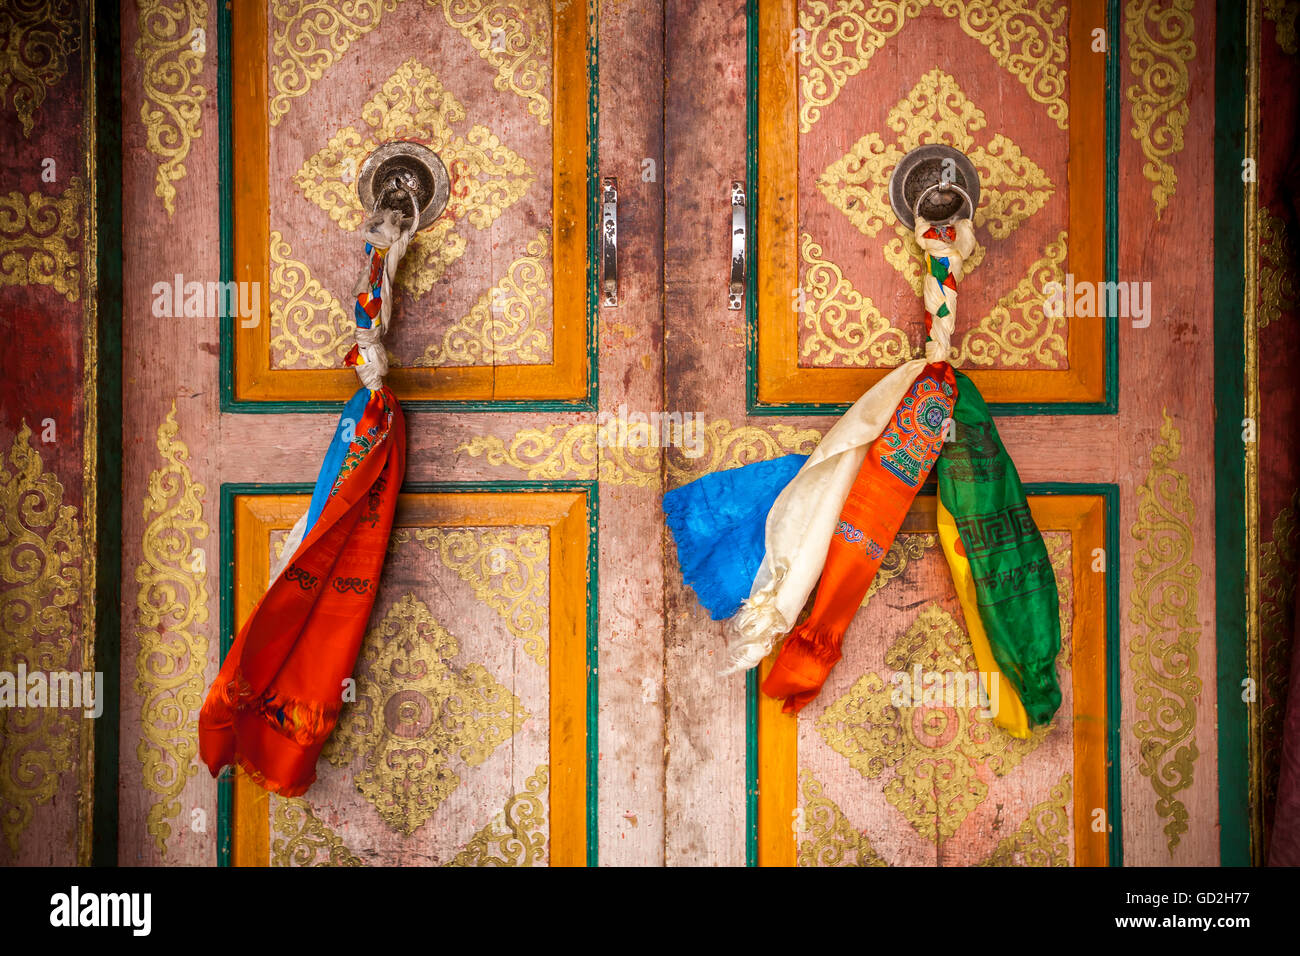 Tuch ist zusammen geflochten, um eine verzierte Tür ziehen an den Türen auf einem tibetischen Stil Kloster zu erstellen; Ladakh, Indien Stockfoto